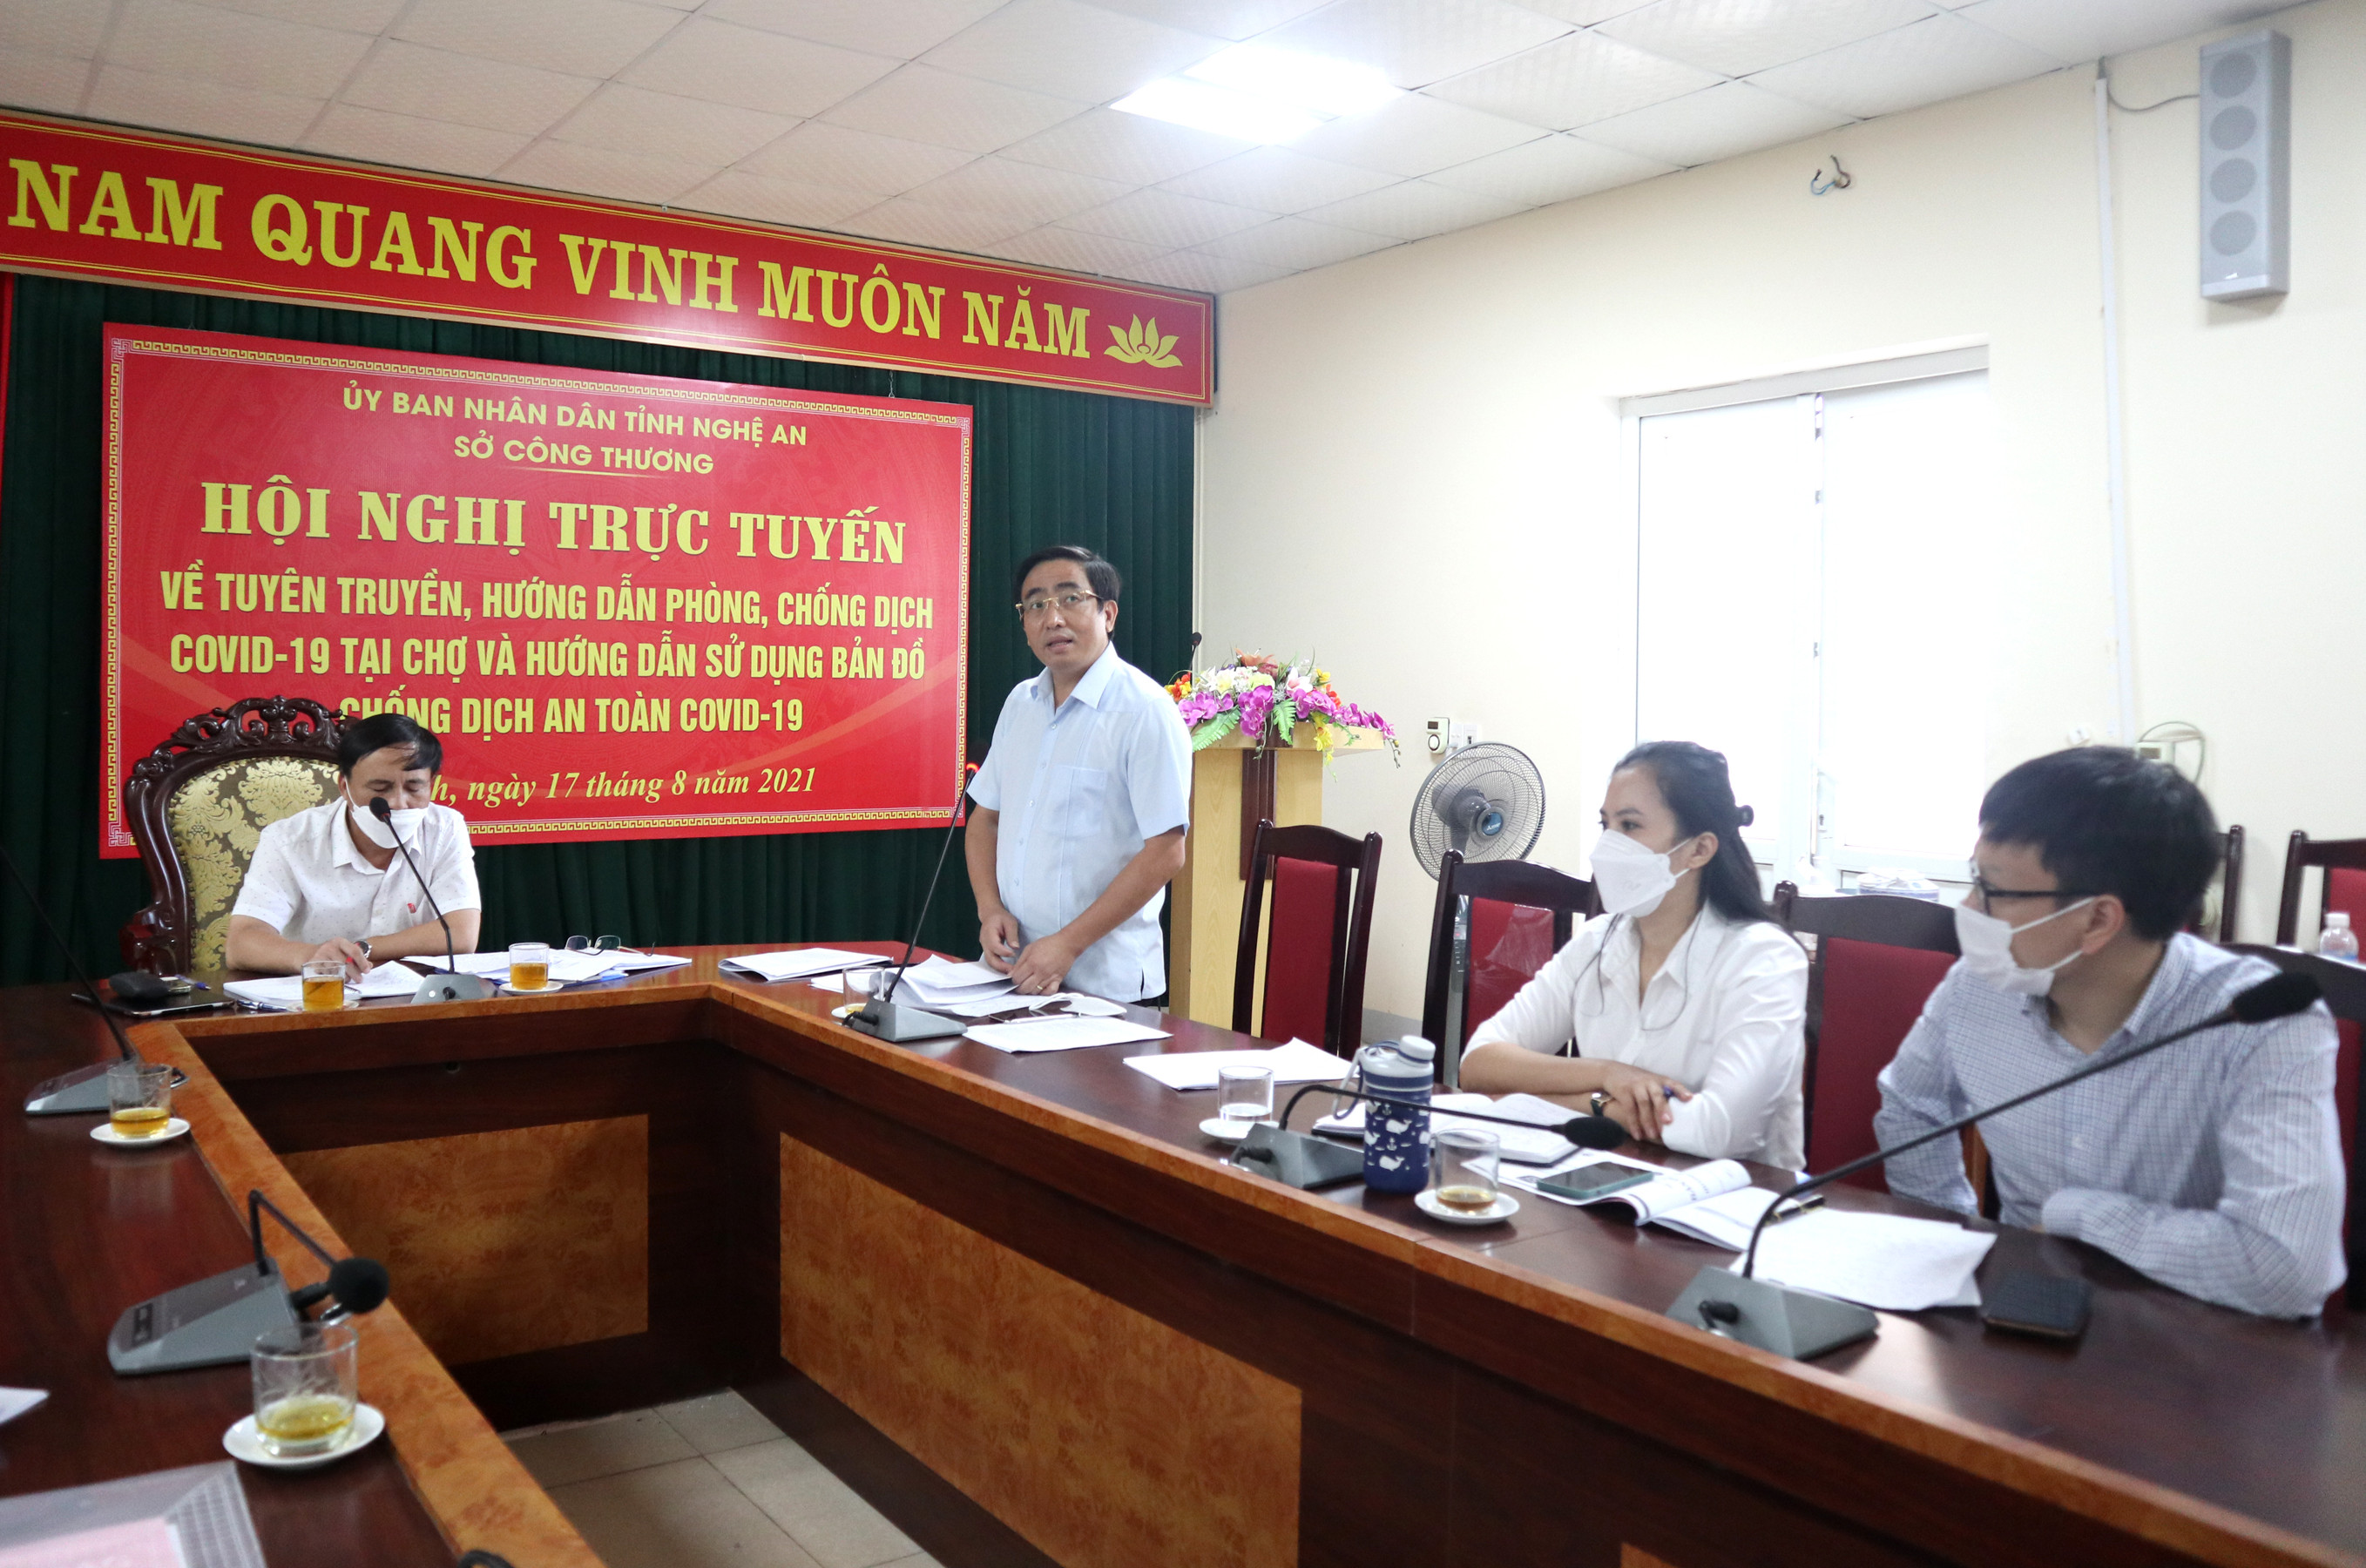 Đồng chí Cao Minh Tú, Phó Giám đốc Sở Công thương giải đáp một số thắc mắc của các địa phương về công tác phòng dịch. Ảnh: Thanh Phúc